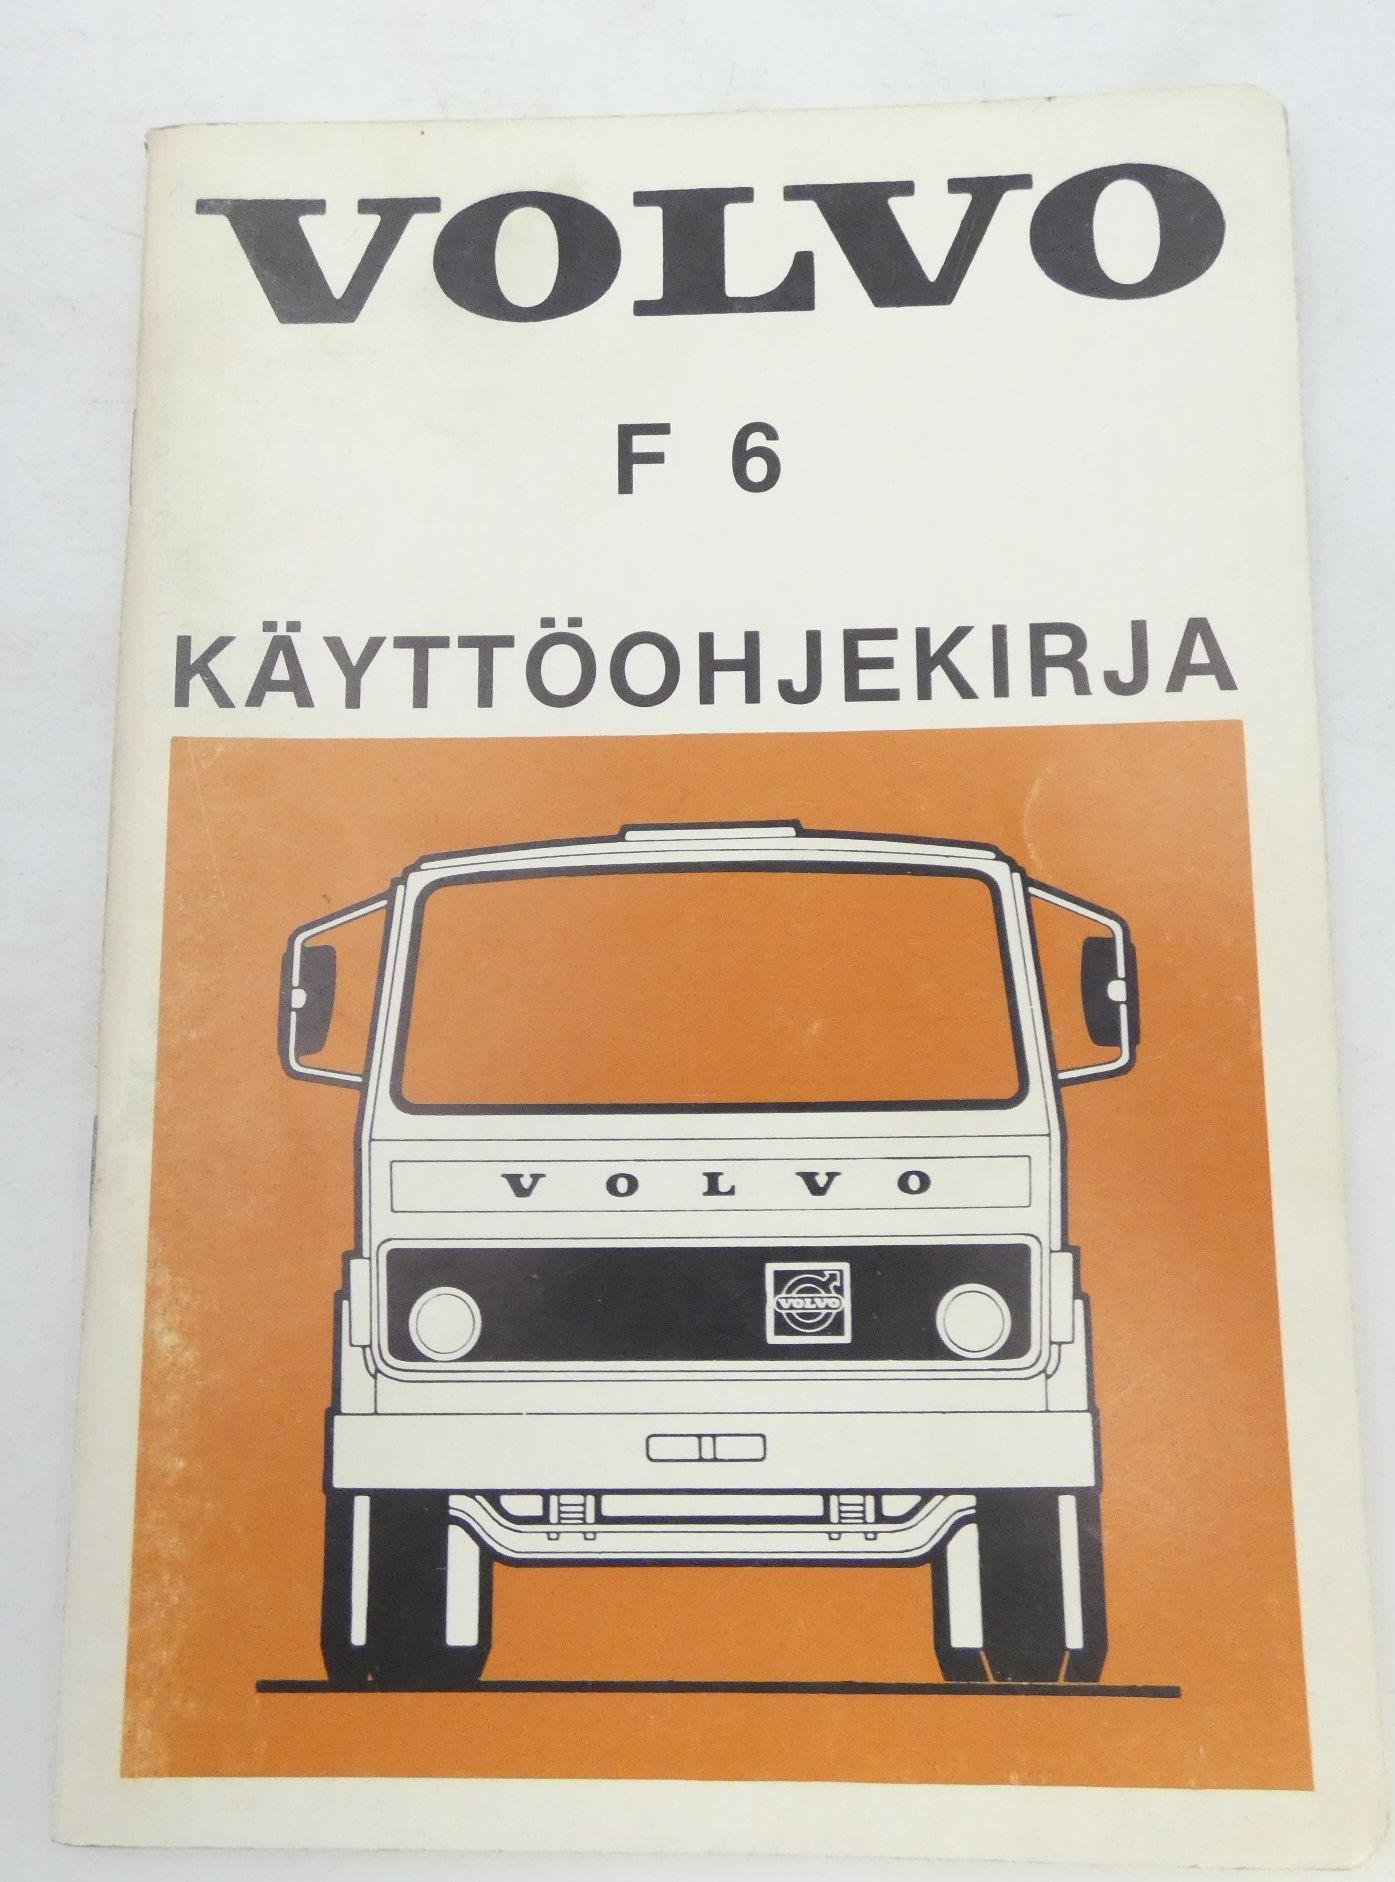 Volvo F6 käyttöohjekirja